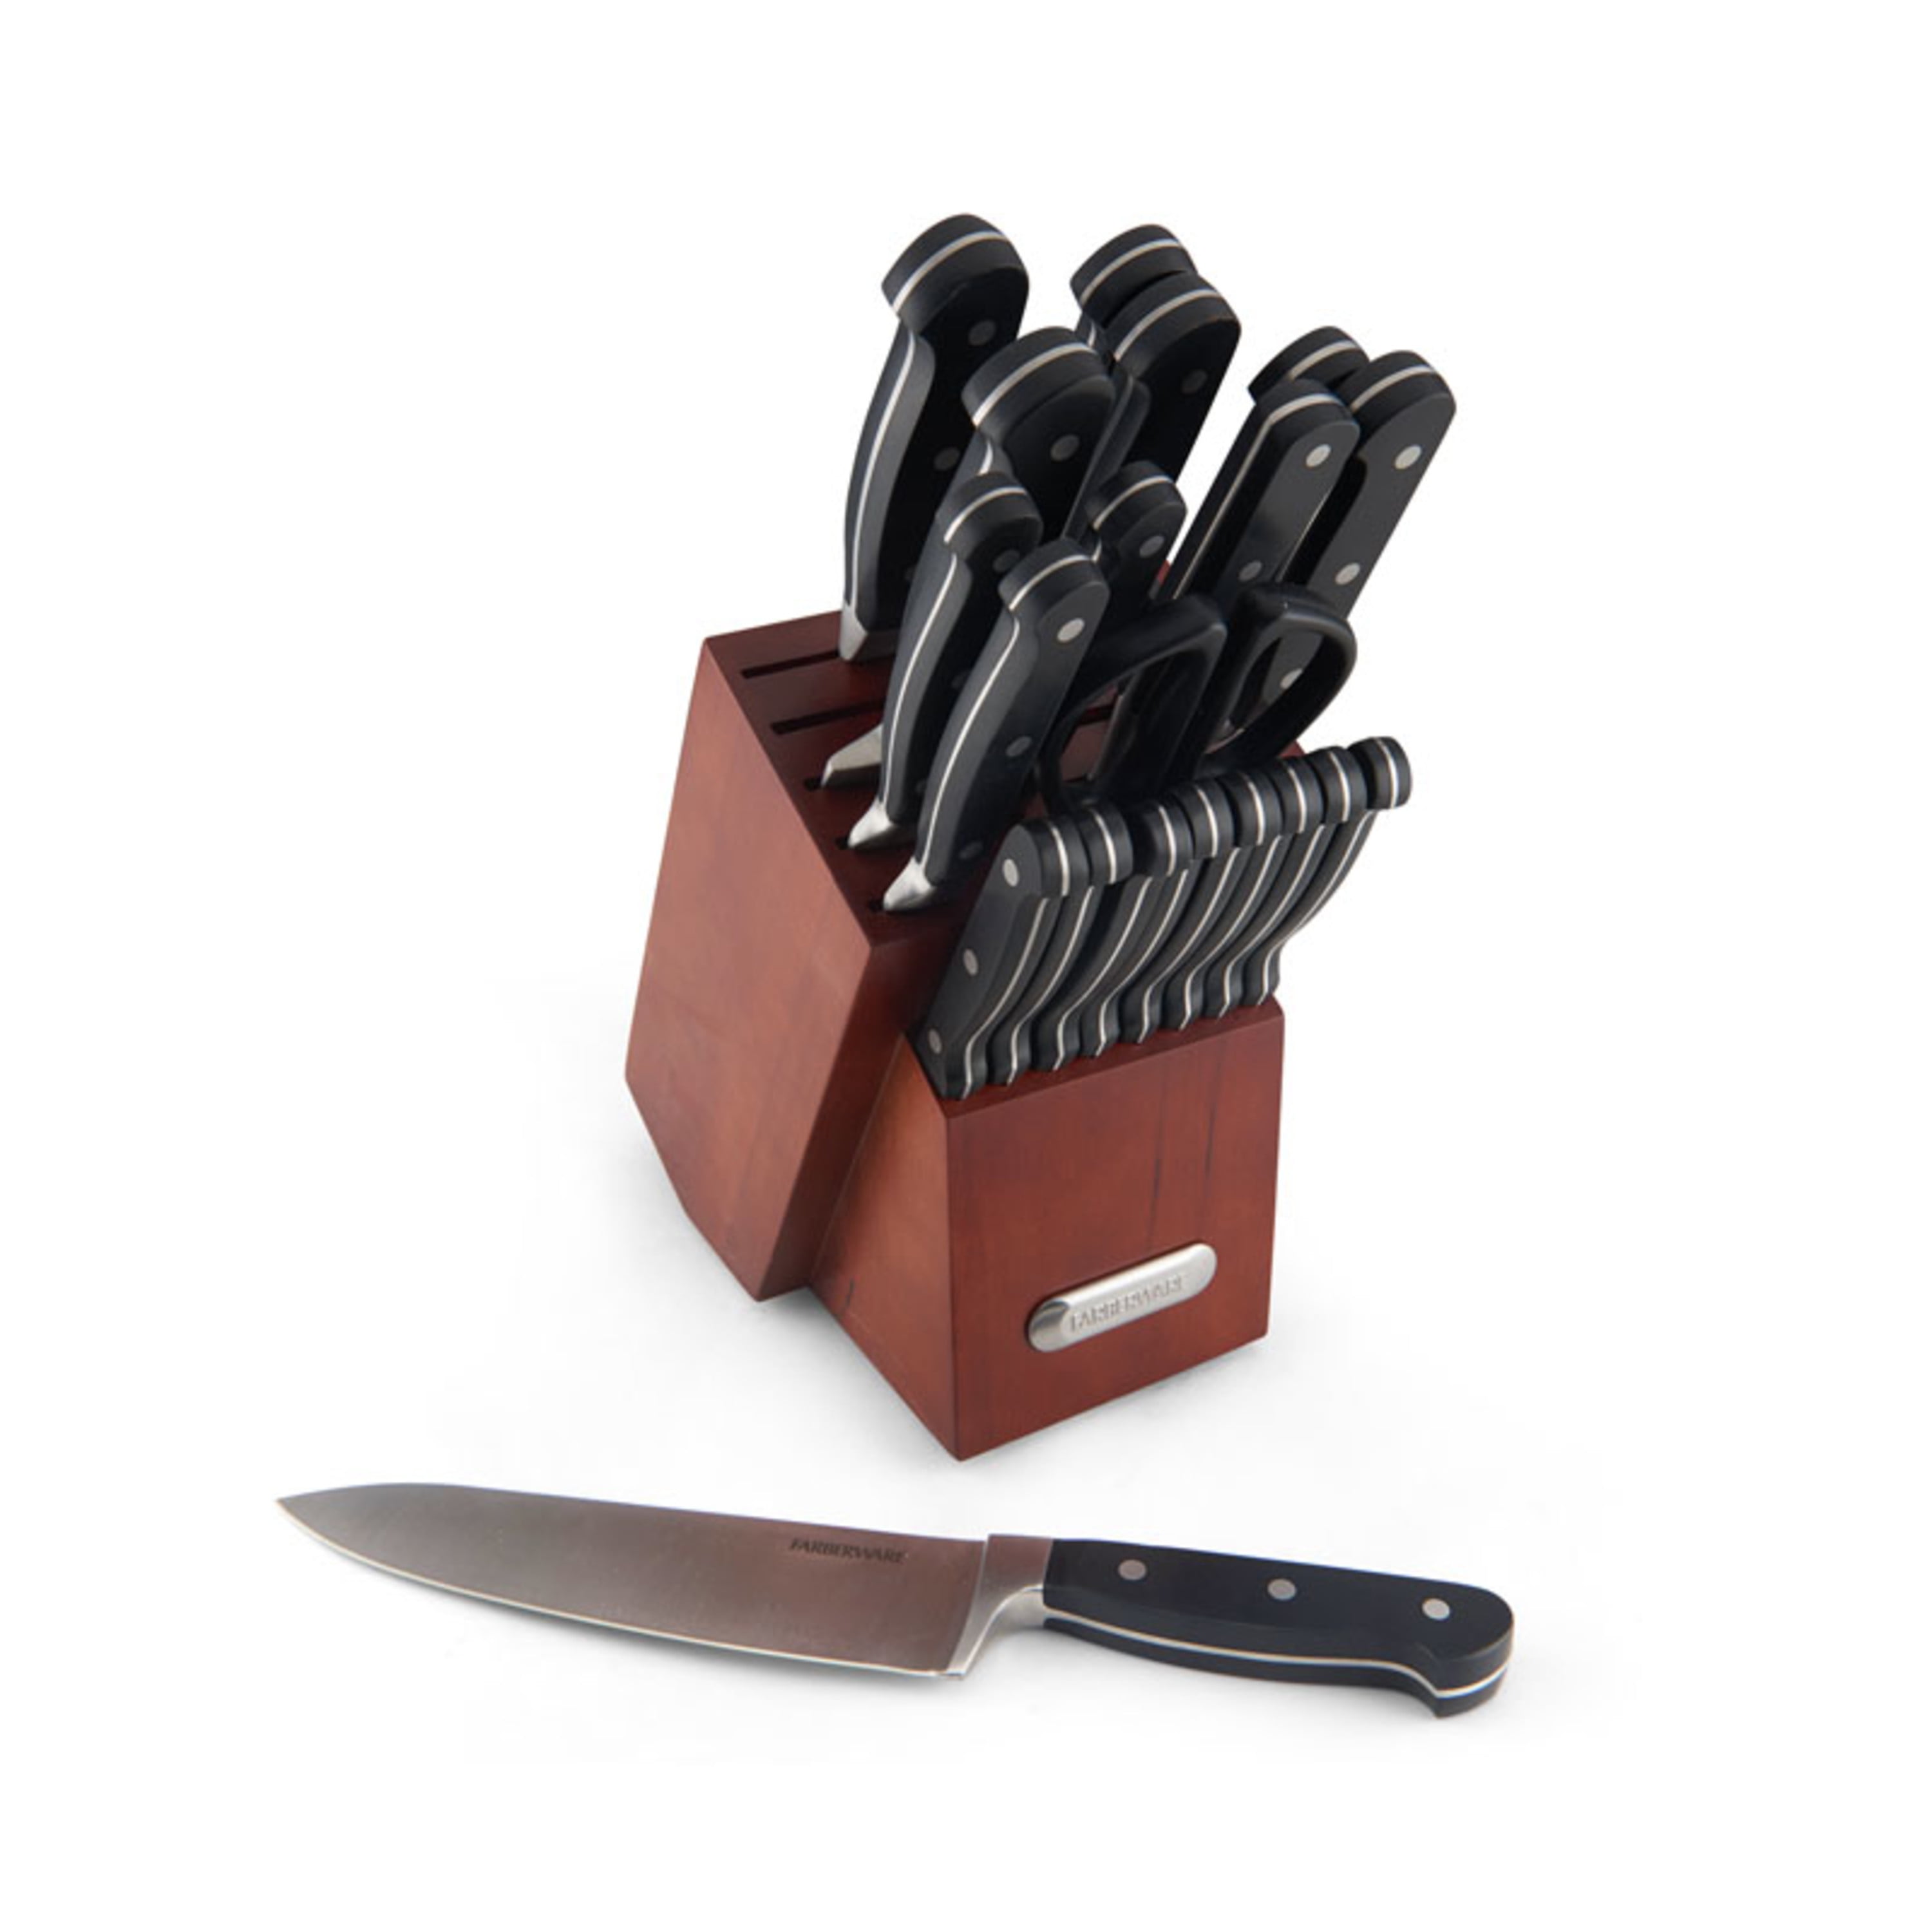 Farberware Edgekeeper® Professional 15-piece Forged Triple Riveted Knife  Block Set - AliExpress